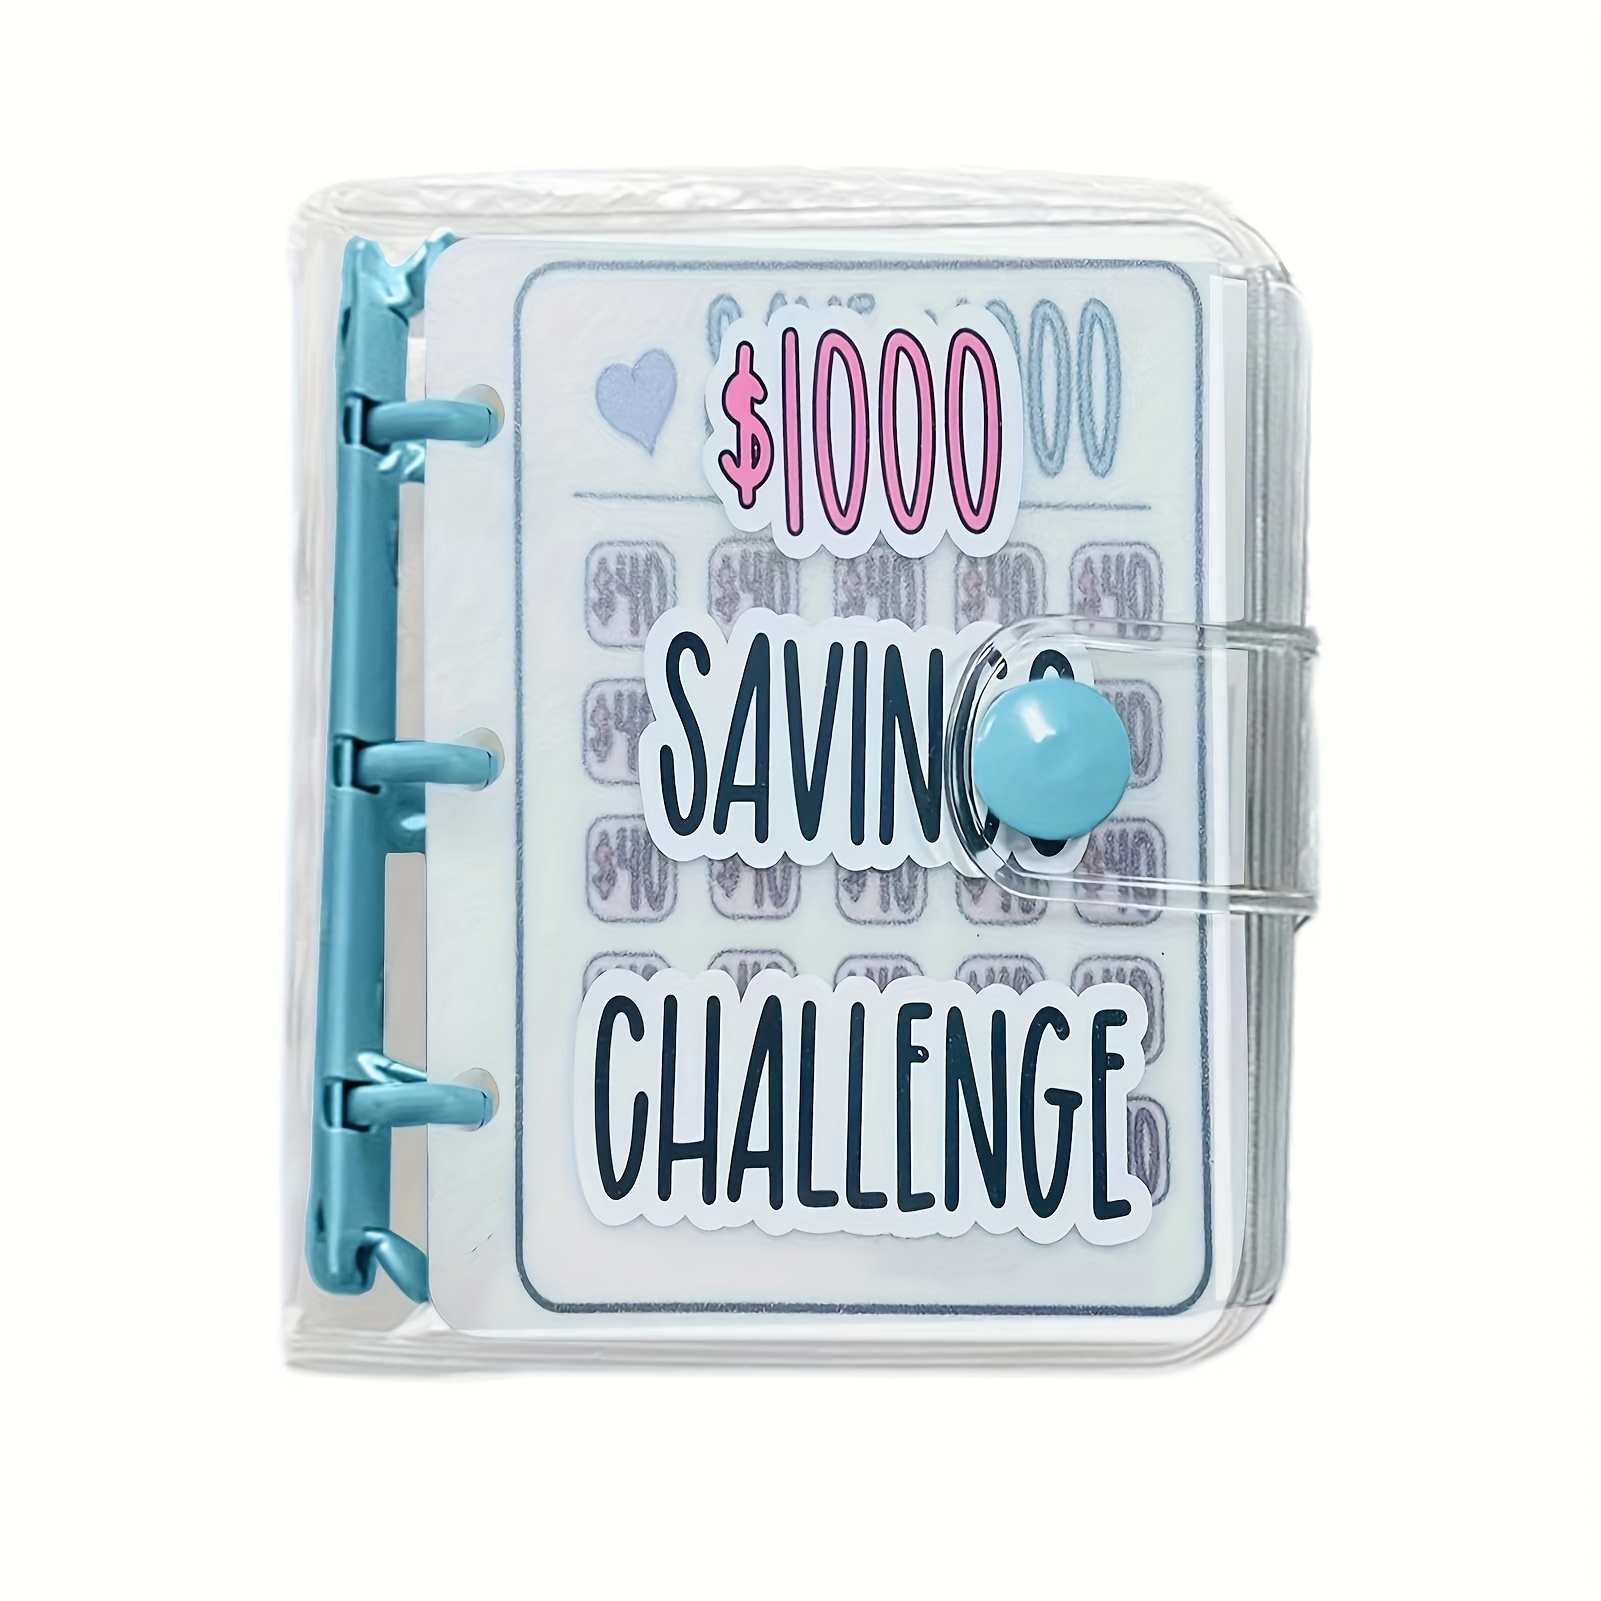  Carpeta de desafío de 100 sobres, hojas de desafíos de ahorro,  forma fácil y divertida de ahorrar $5,050, carpeta de presupuesto con  sobres de efectivo, carpeta de desafíos de ahorro, planificador